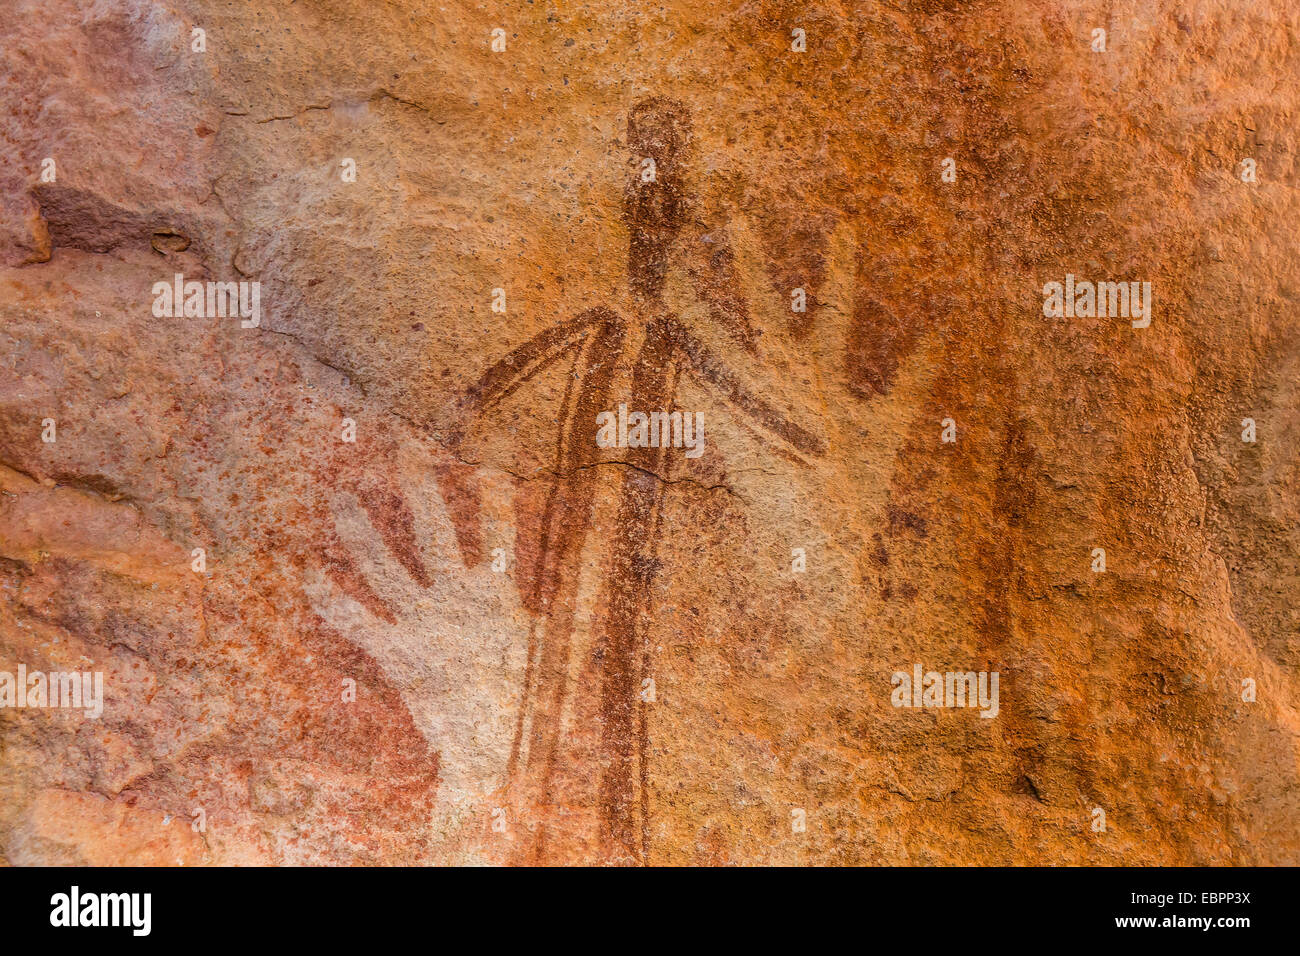 Rock art endémique à la Kimberley, appelée Gwion Gwion ou Bradshaw Art, Vansittart Bay, Kimberley, Western Australia, Australia Banque D'Images